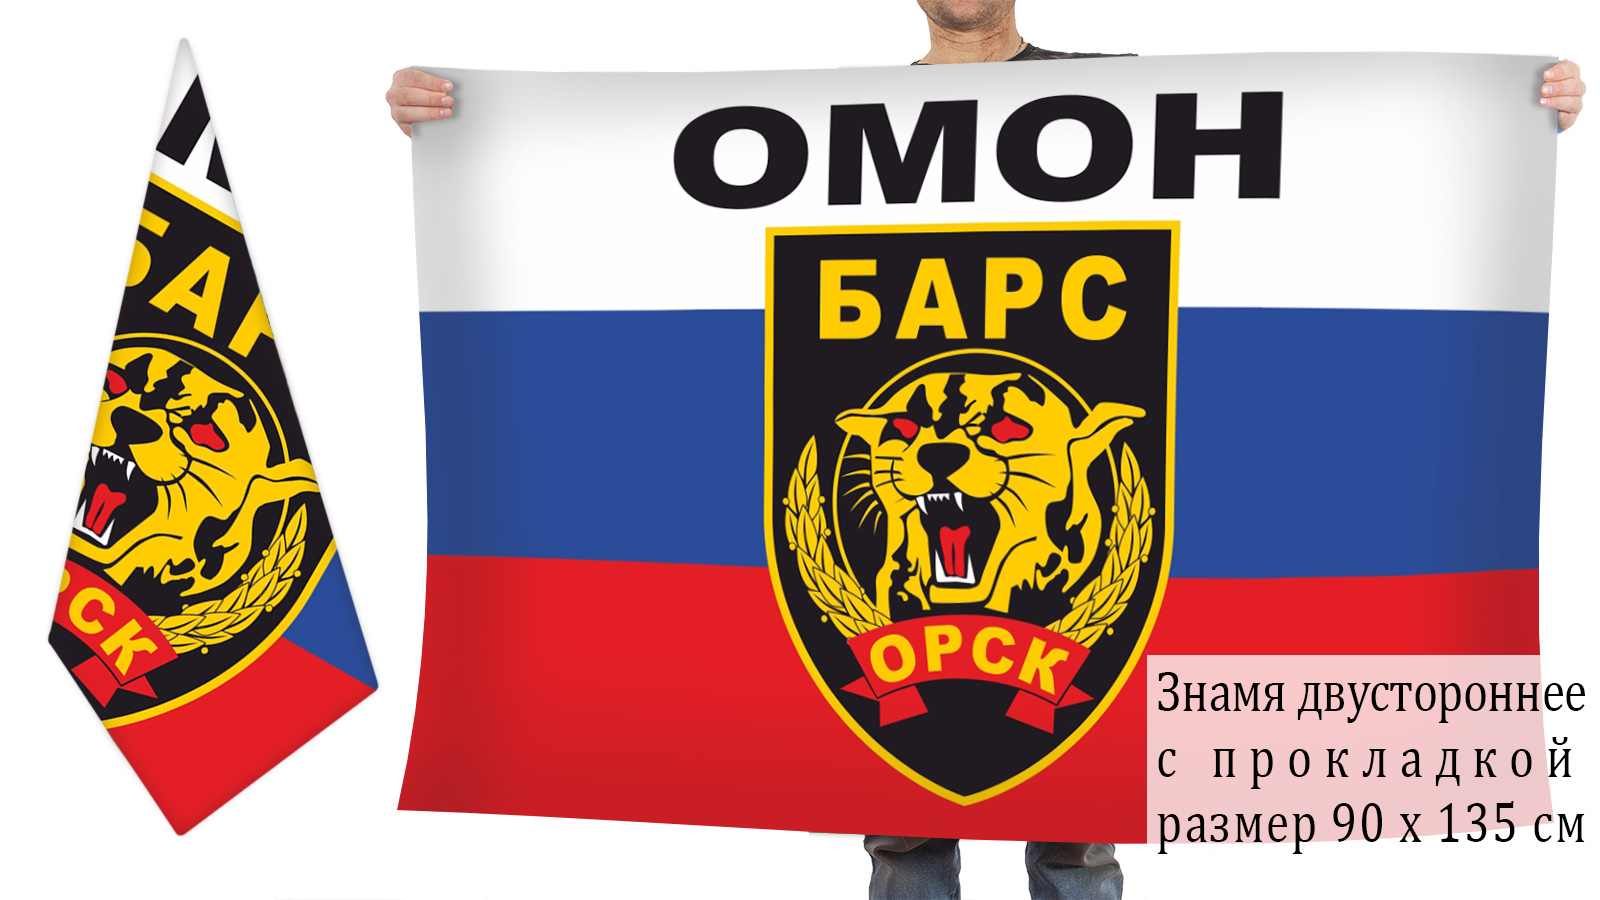 Двусторонний флаг ОМОН "Барс"